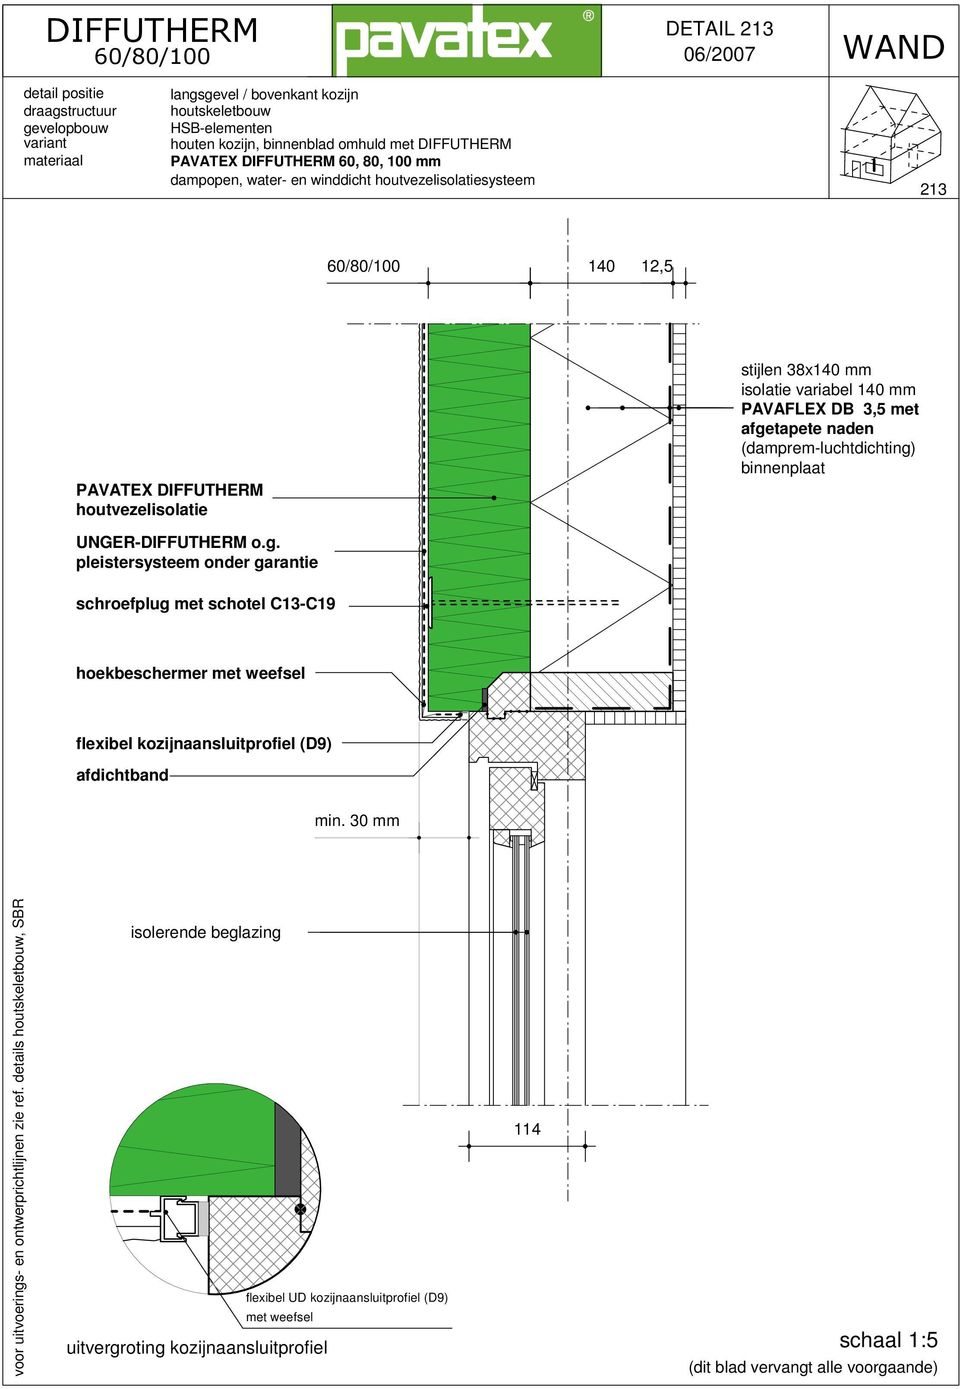 kozijnaansluitprofiel (D9) afdichtband min. 30 mm voor uitvoerings- en ontwerprichtlijnen zie ref.